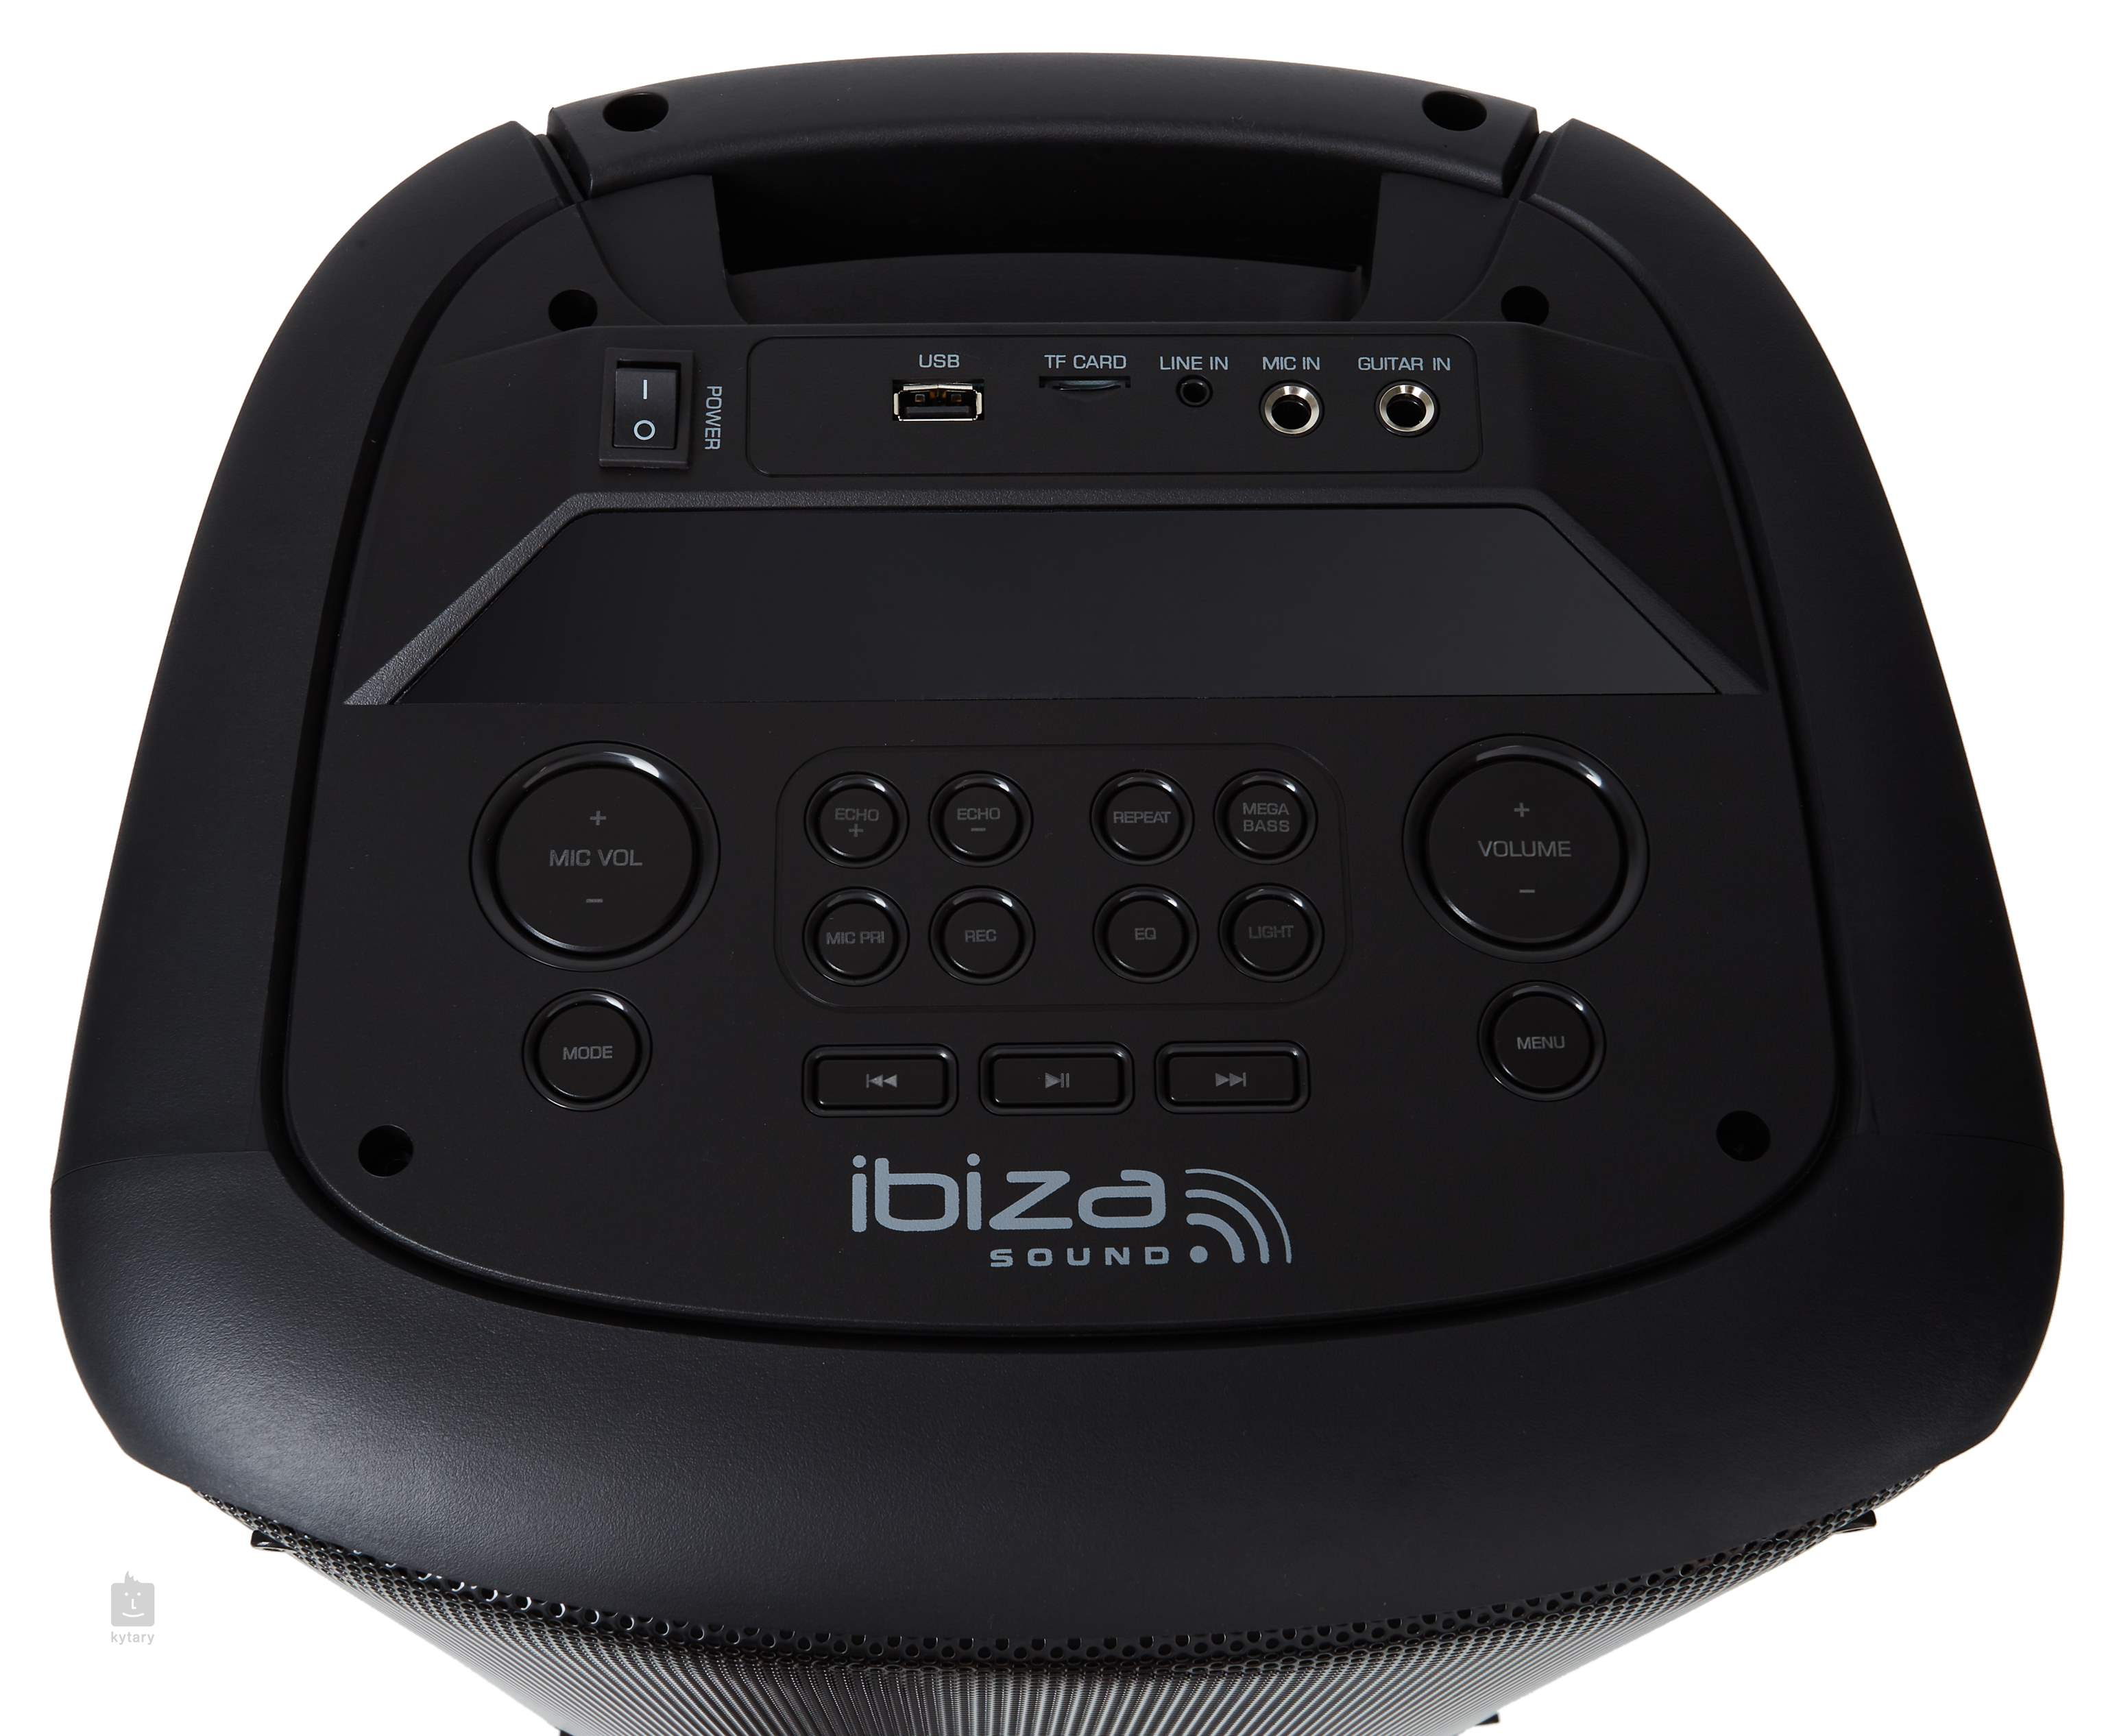 IBIZA RAINBOW 1000 - Enceinte High Power 1000W - Lecteur USB, Bluetooth,  Micro-SD - Entrée micro, Fonction enregistrement, MégaBass